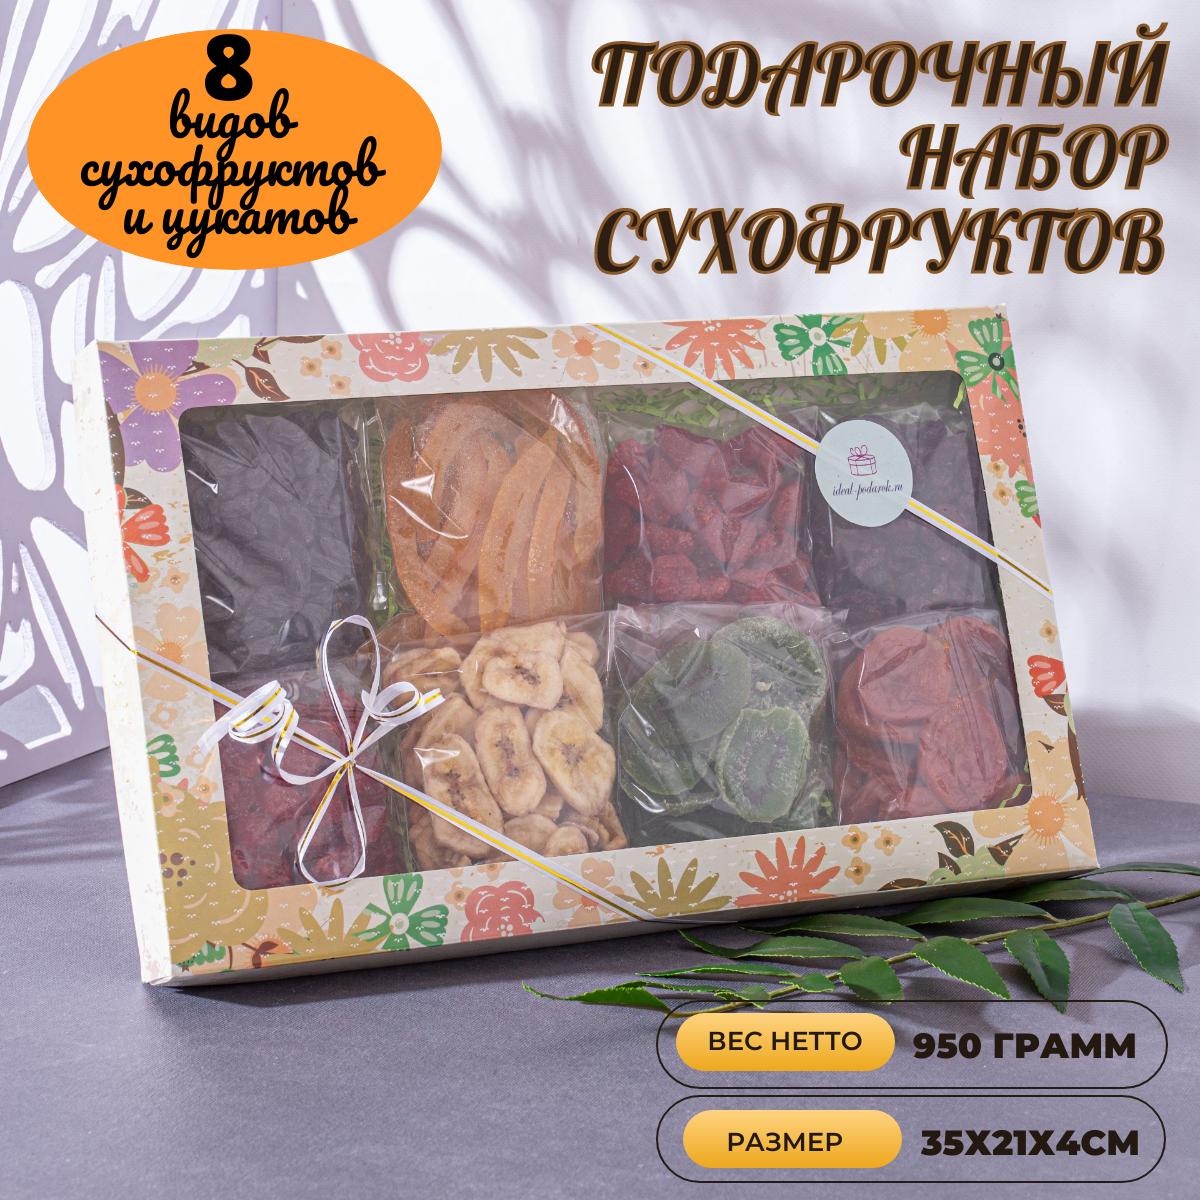 Подарочный набор сухофруктов и цукатов "Ассорти № 1" Идеал-подарок